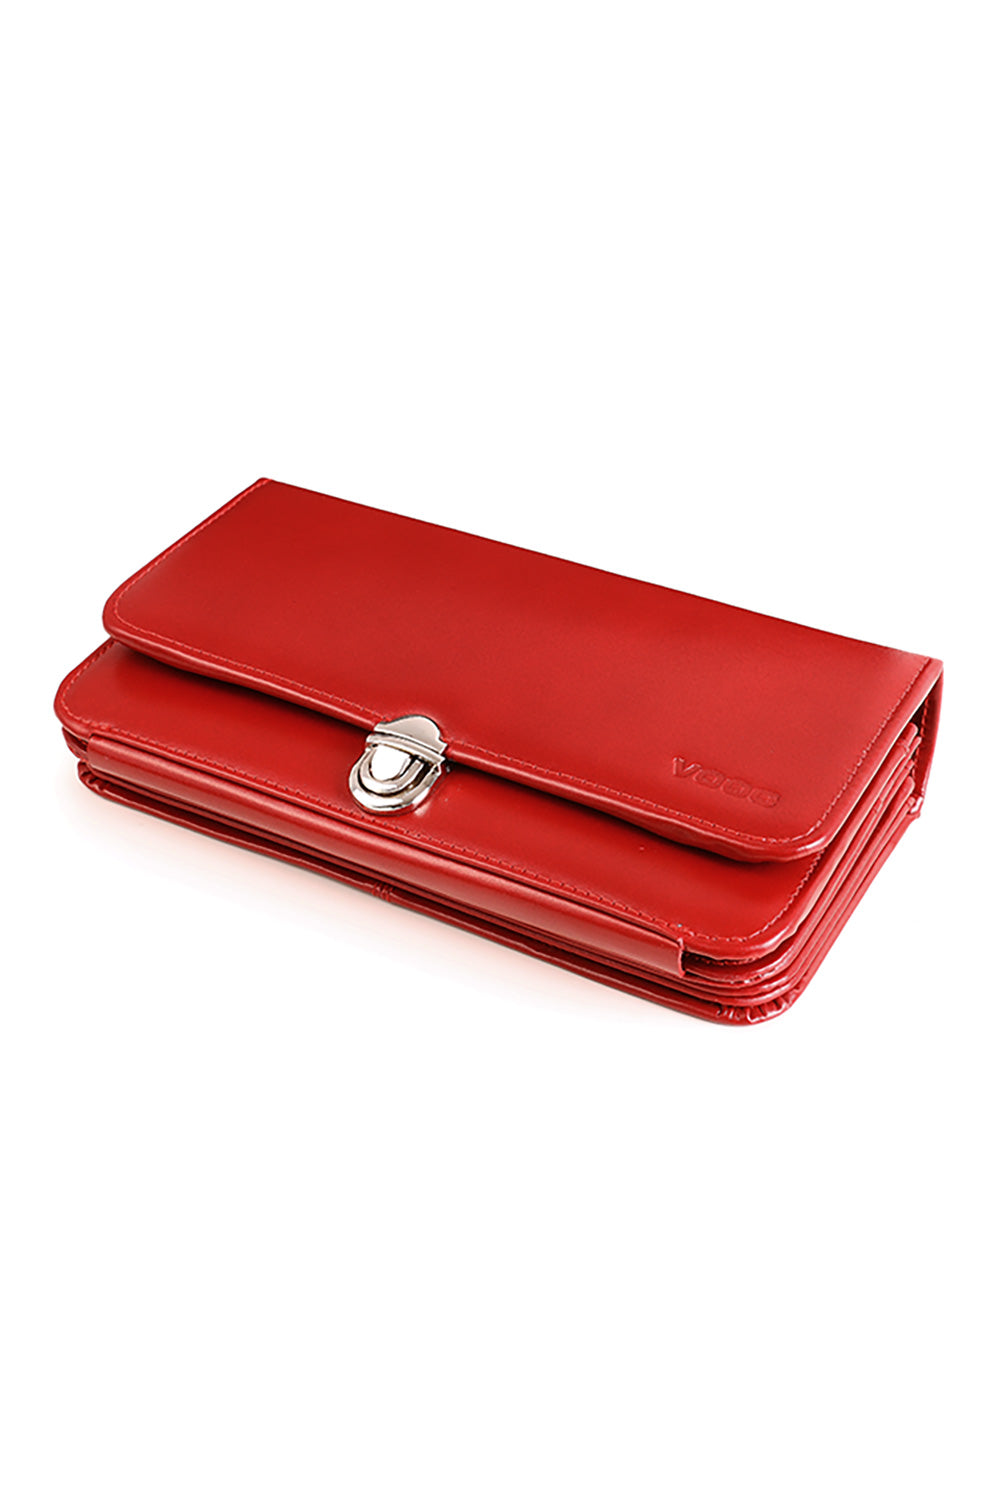 Women`s wallet model 152109 Elsy Style Wallets for Women, Purses, Belts